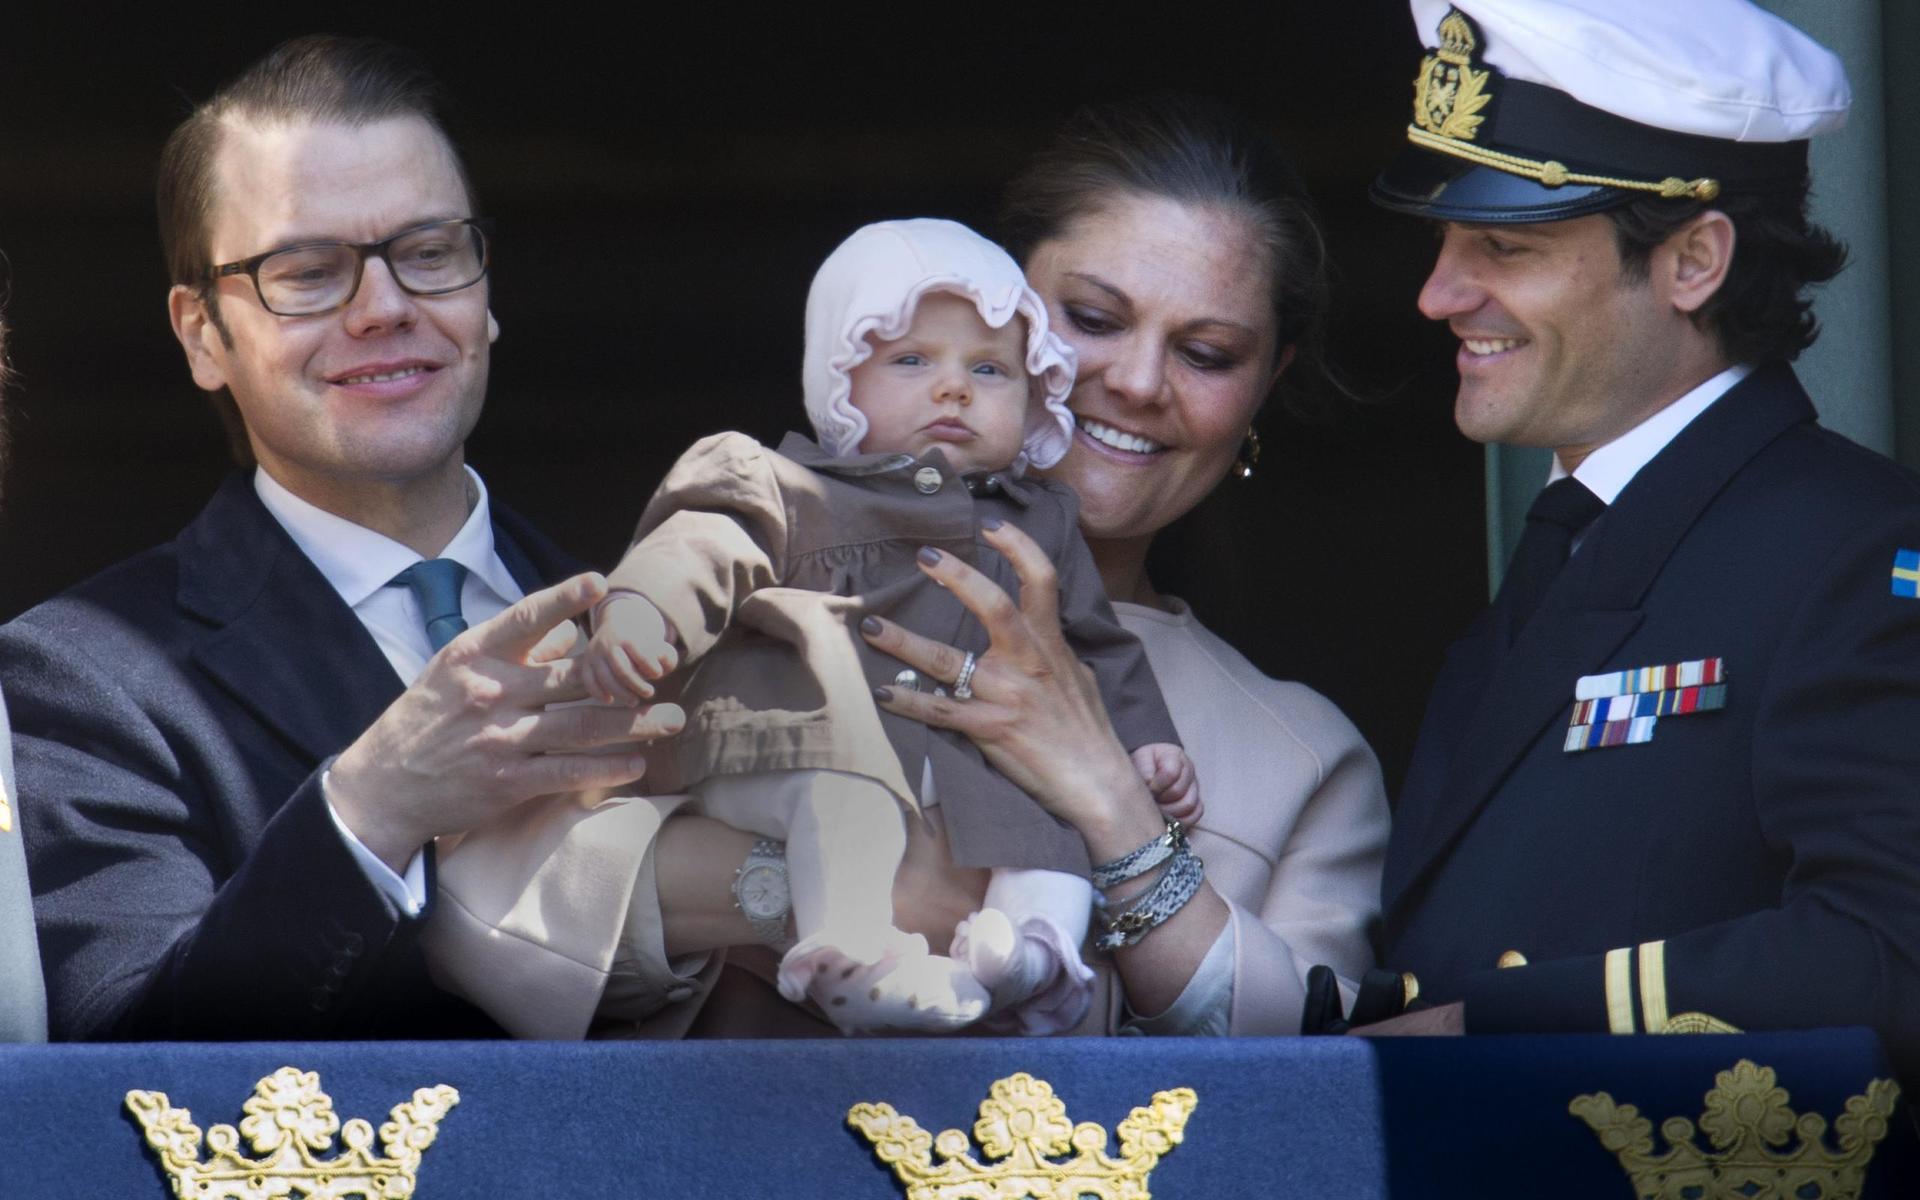 Prins Daniel och kronprinsessan Victoria visade upp prinsessan Estelle för första gången från balkongen på Stockholms slott när kung Carl XVI Gustaf tog emot folkets hyllningar på sin 66-årsdag på valborgsmässoafton 2012.